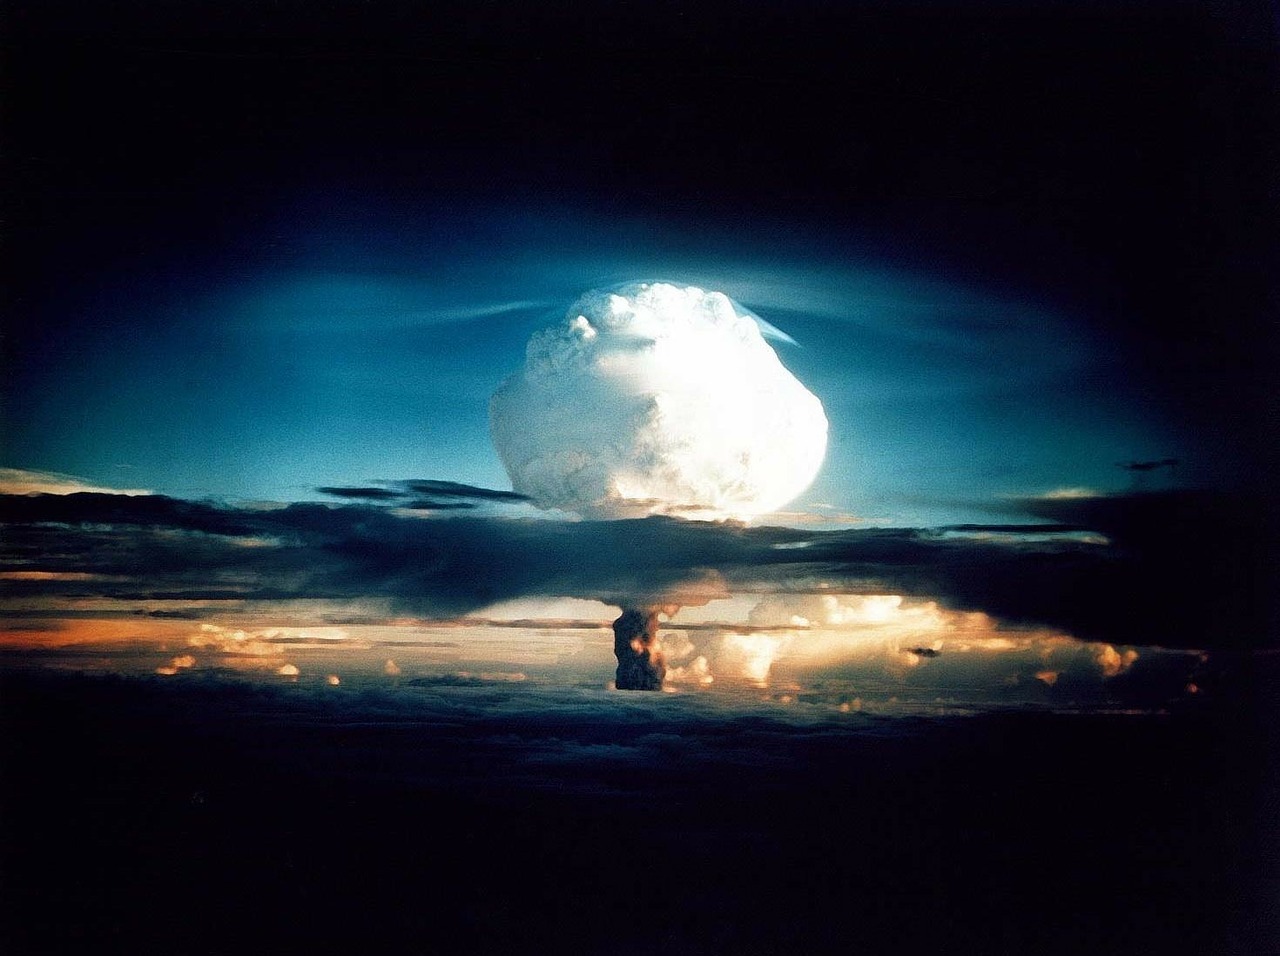 Расконсервируем полигон: Как проходит подготовка к ядерным испытаниям